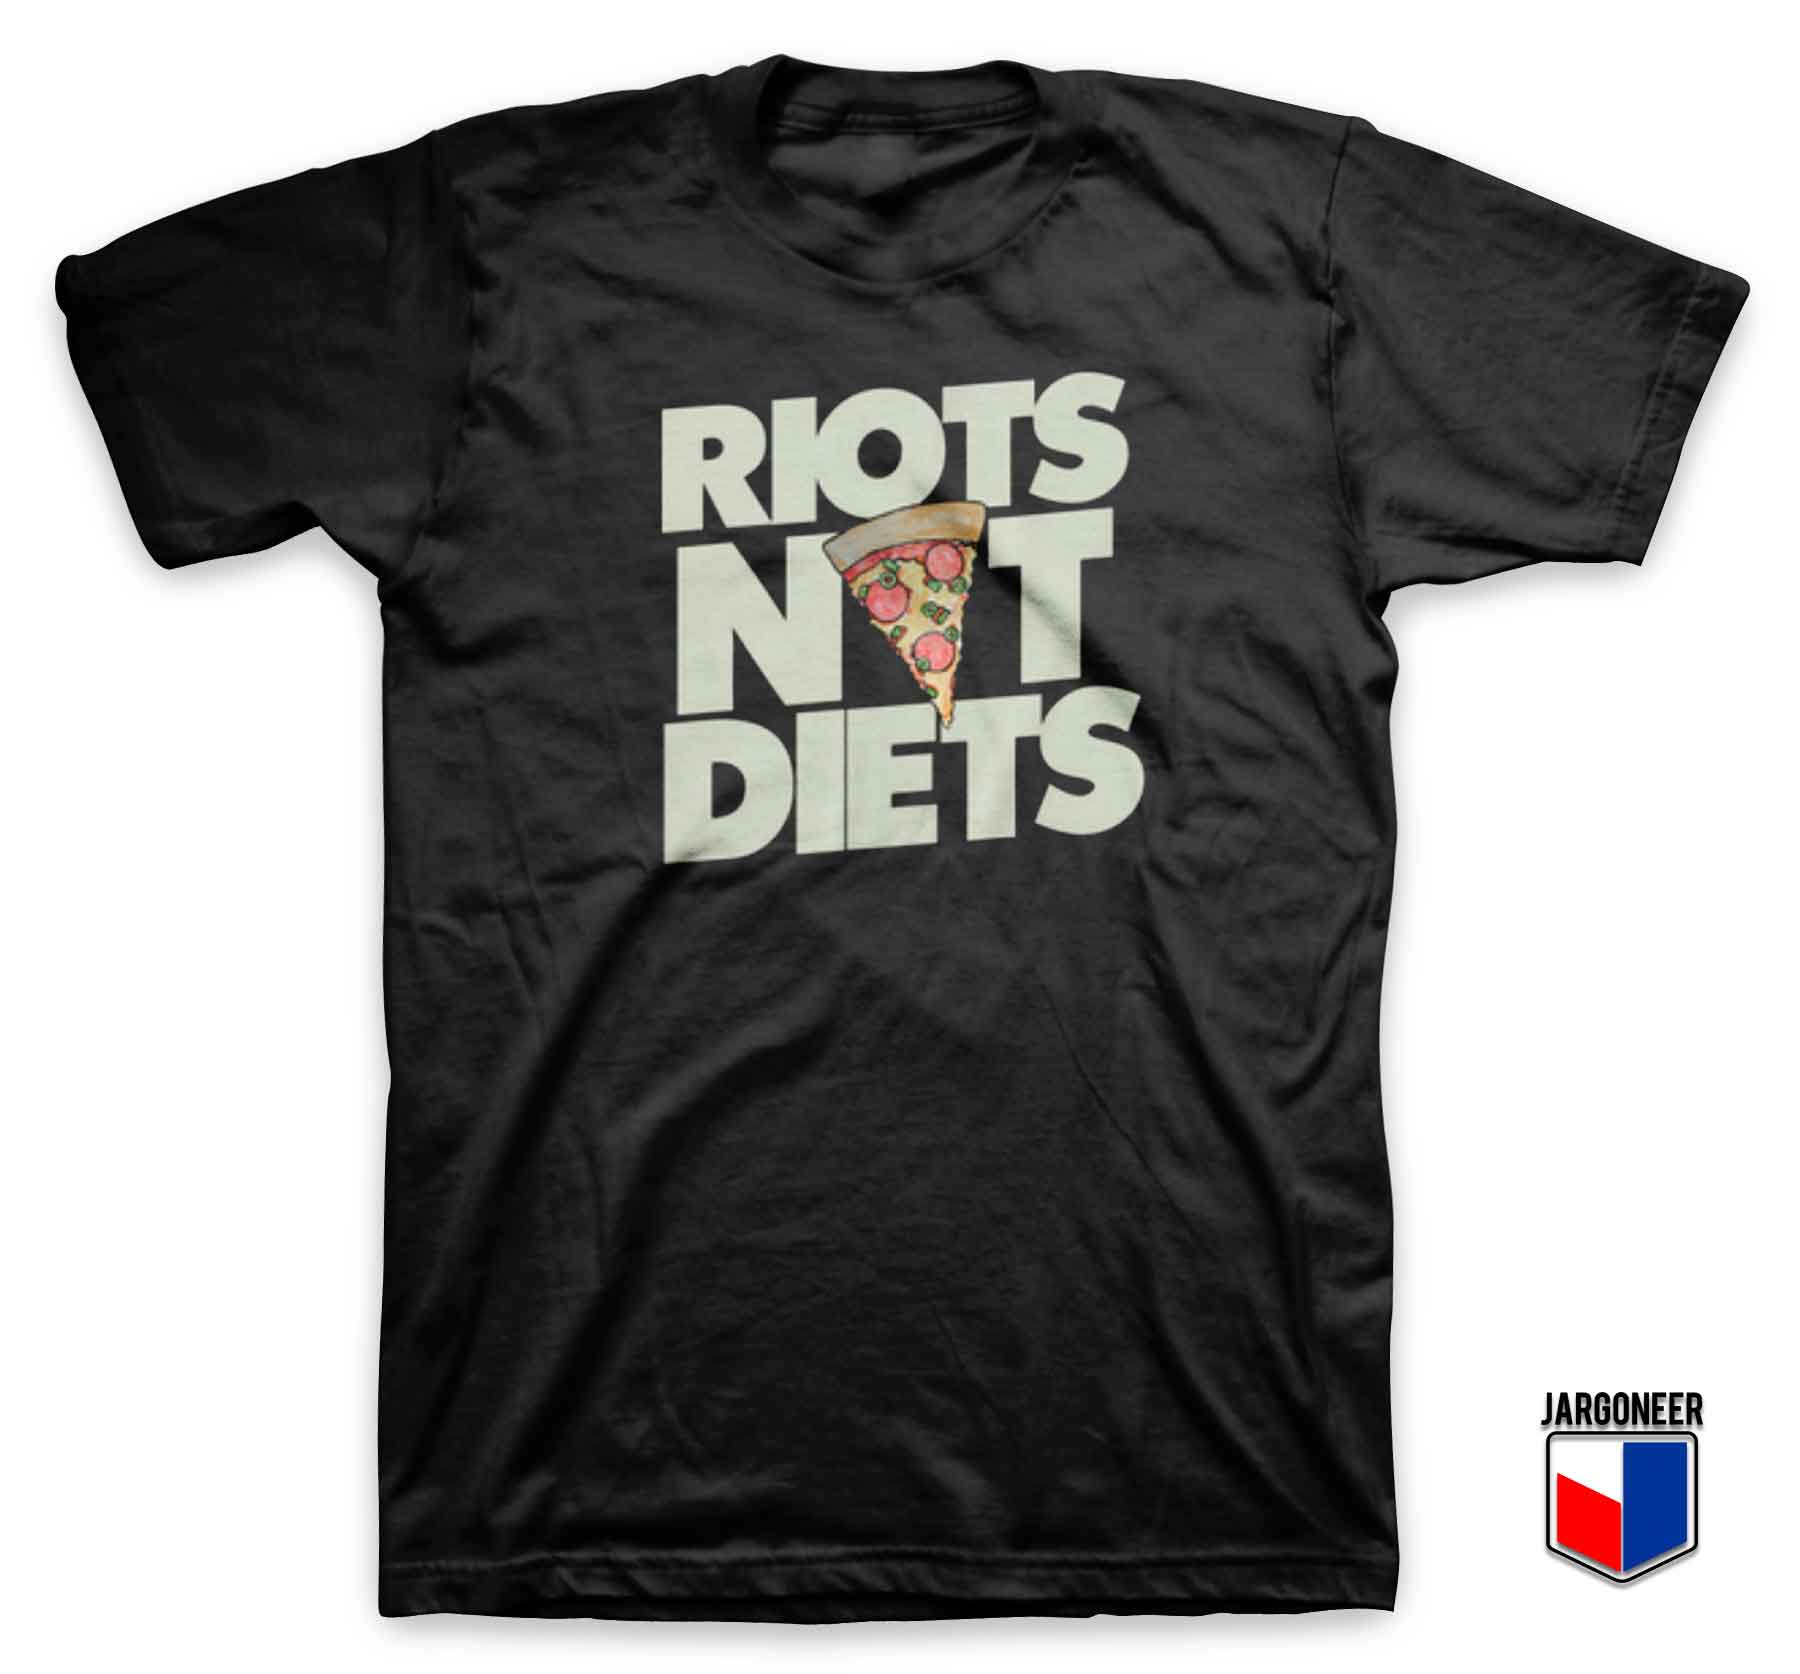 Riots Not Diets T Shirt - Shop Unique Graphic Cool Shirt Designs